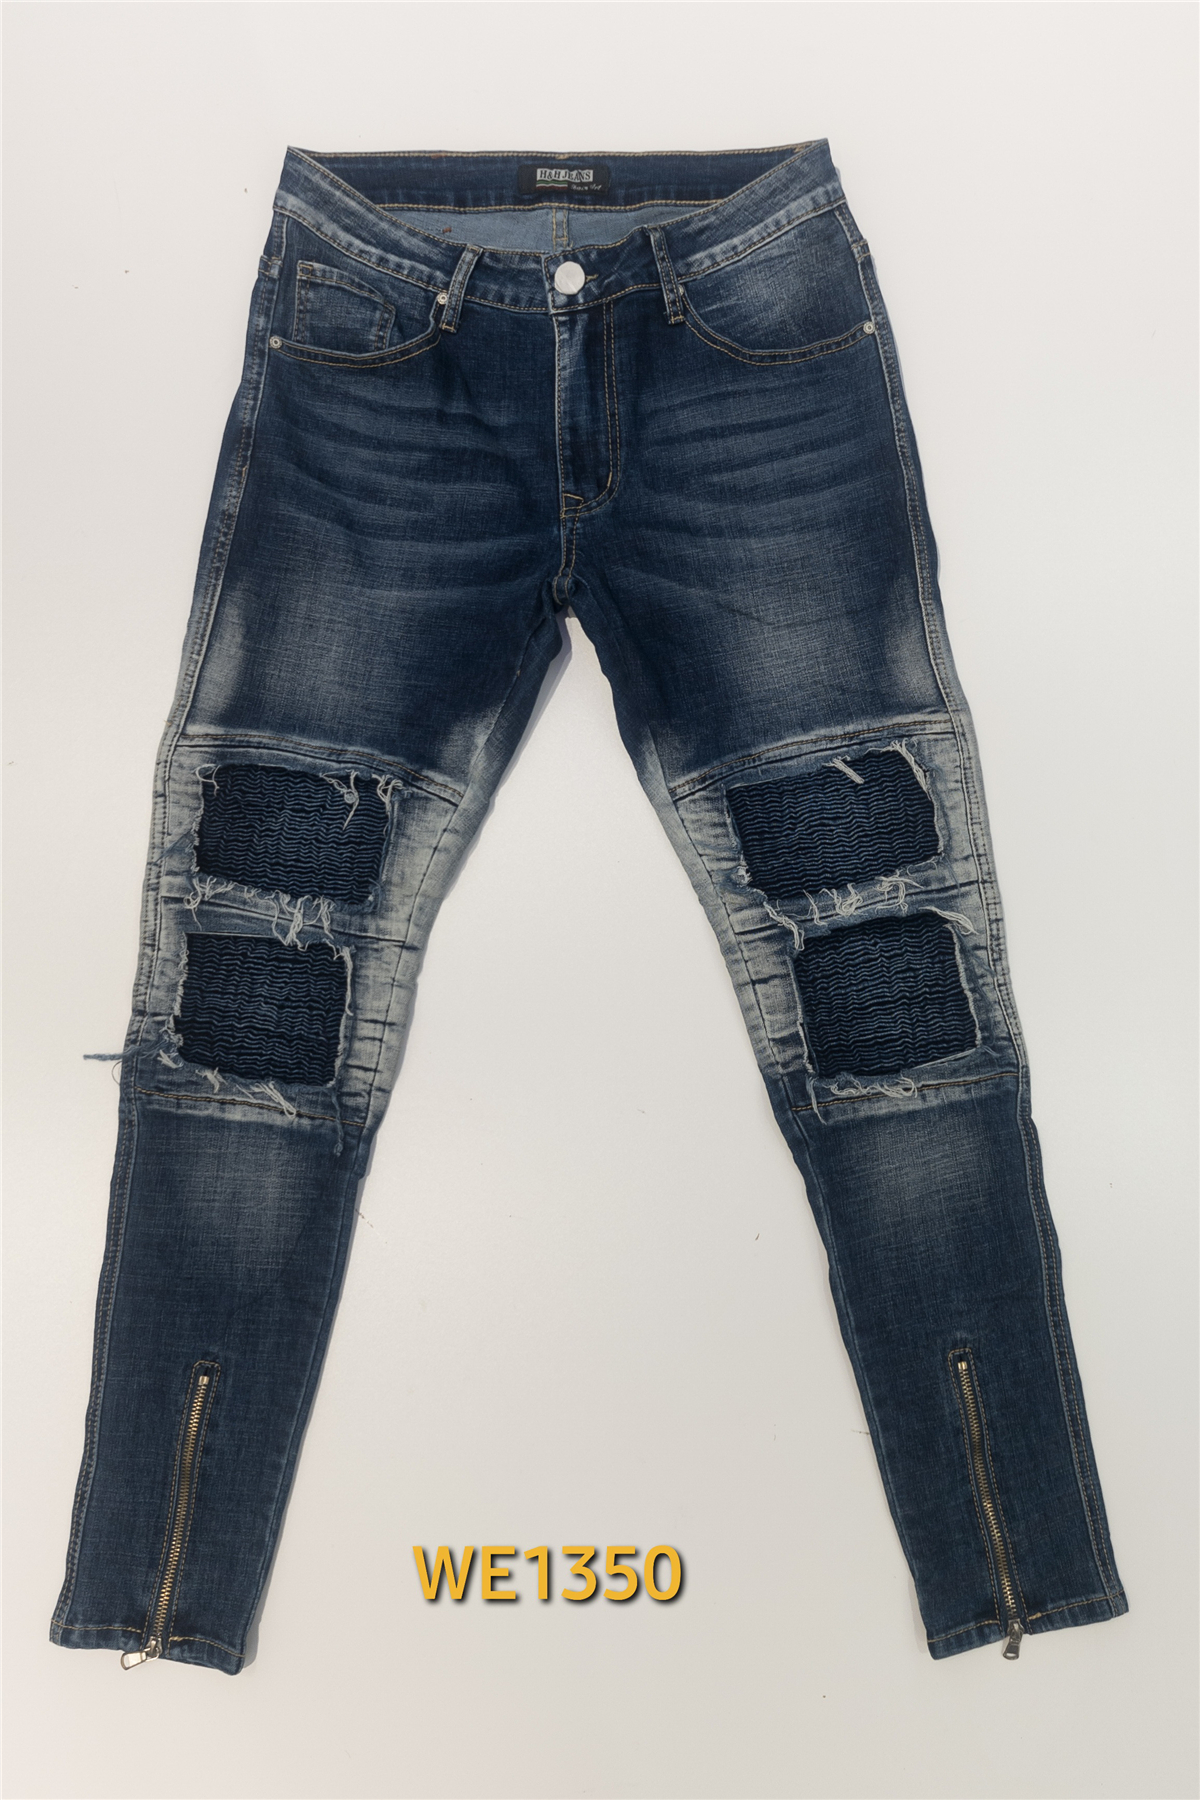 Jeans Homme Jean ROY LYS WE1350 #c Efashion Paris